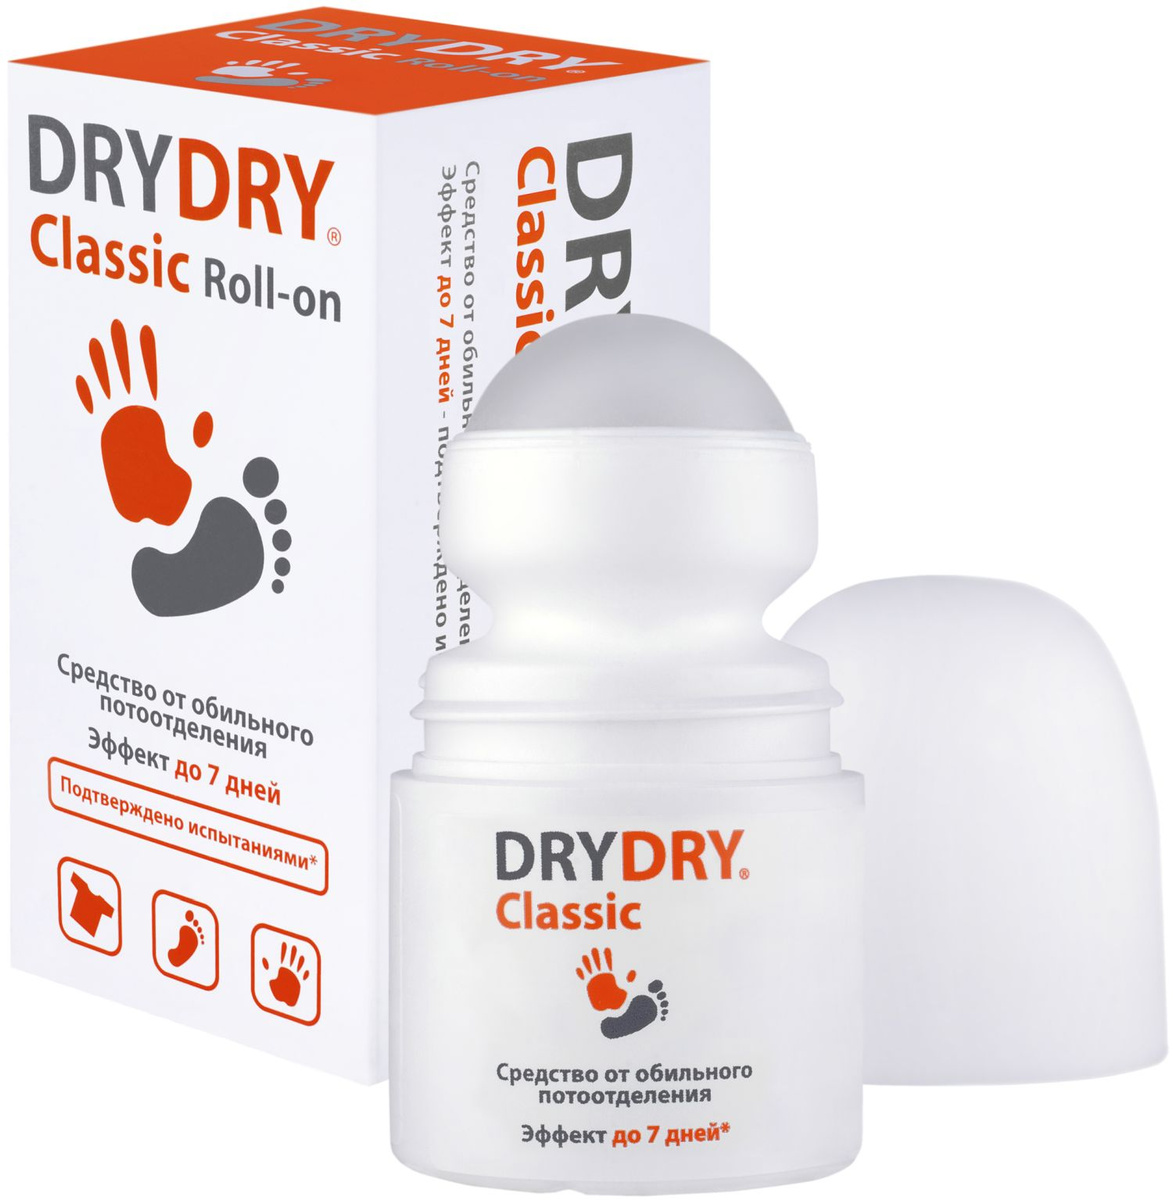 Дезодоранты Dry Dry — отзывы, цена, где купить